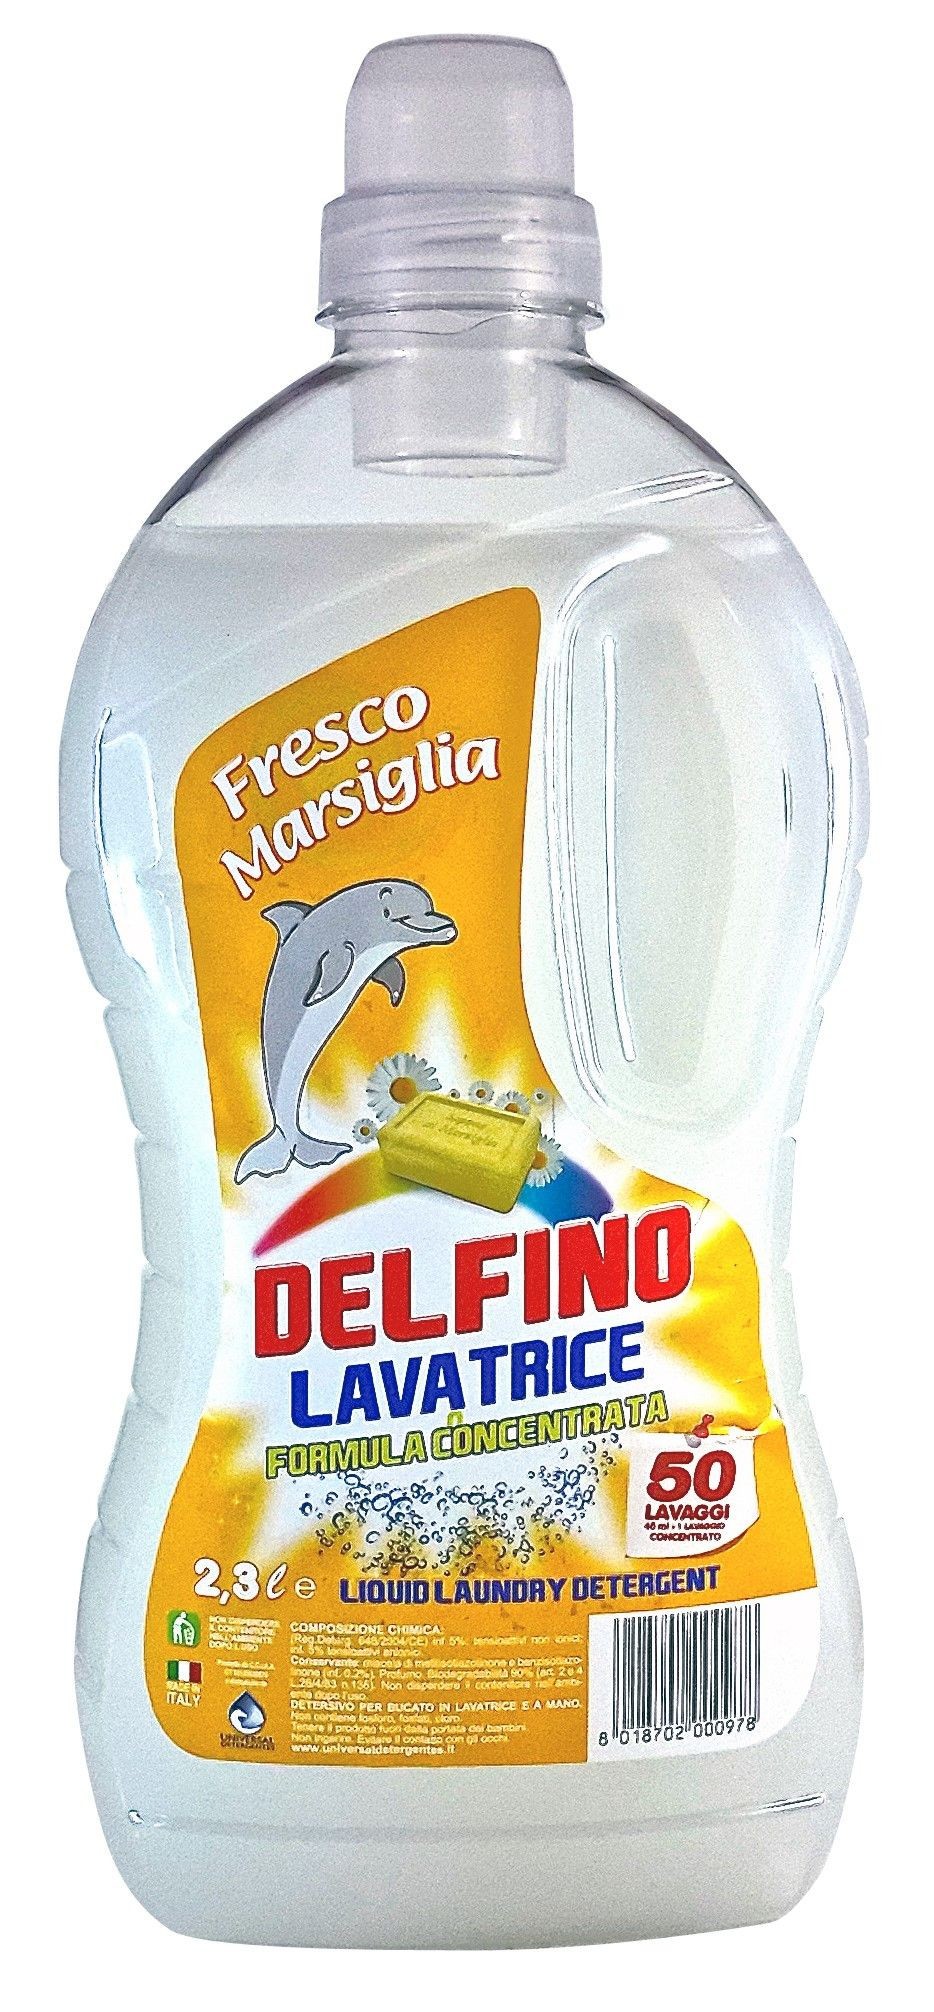 Delfino Lavatrice Marsiglia 2,3 Lt